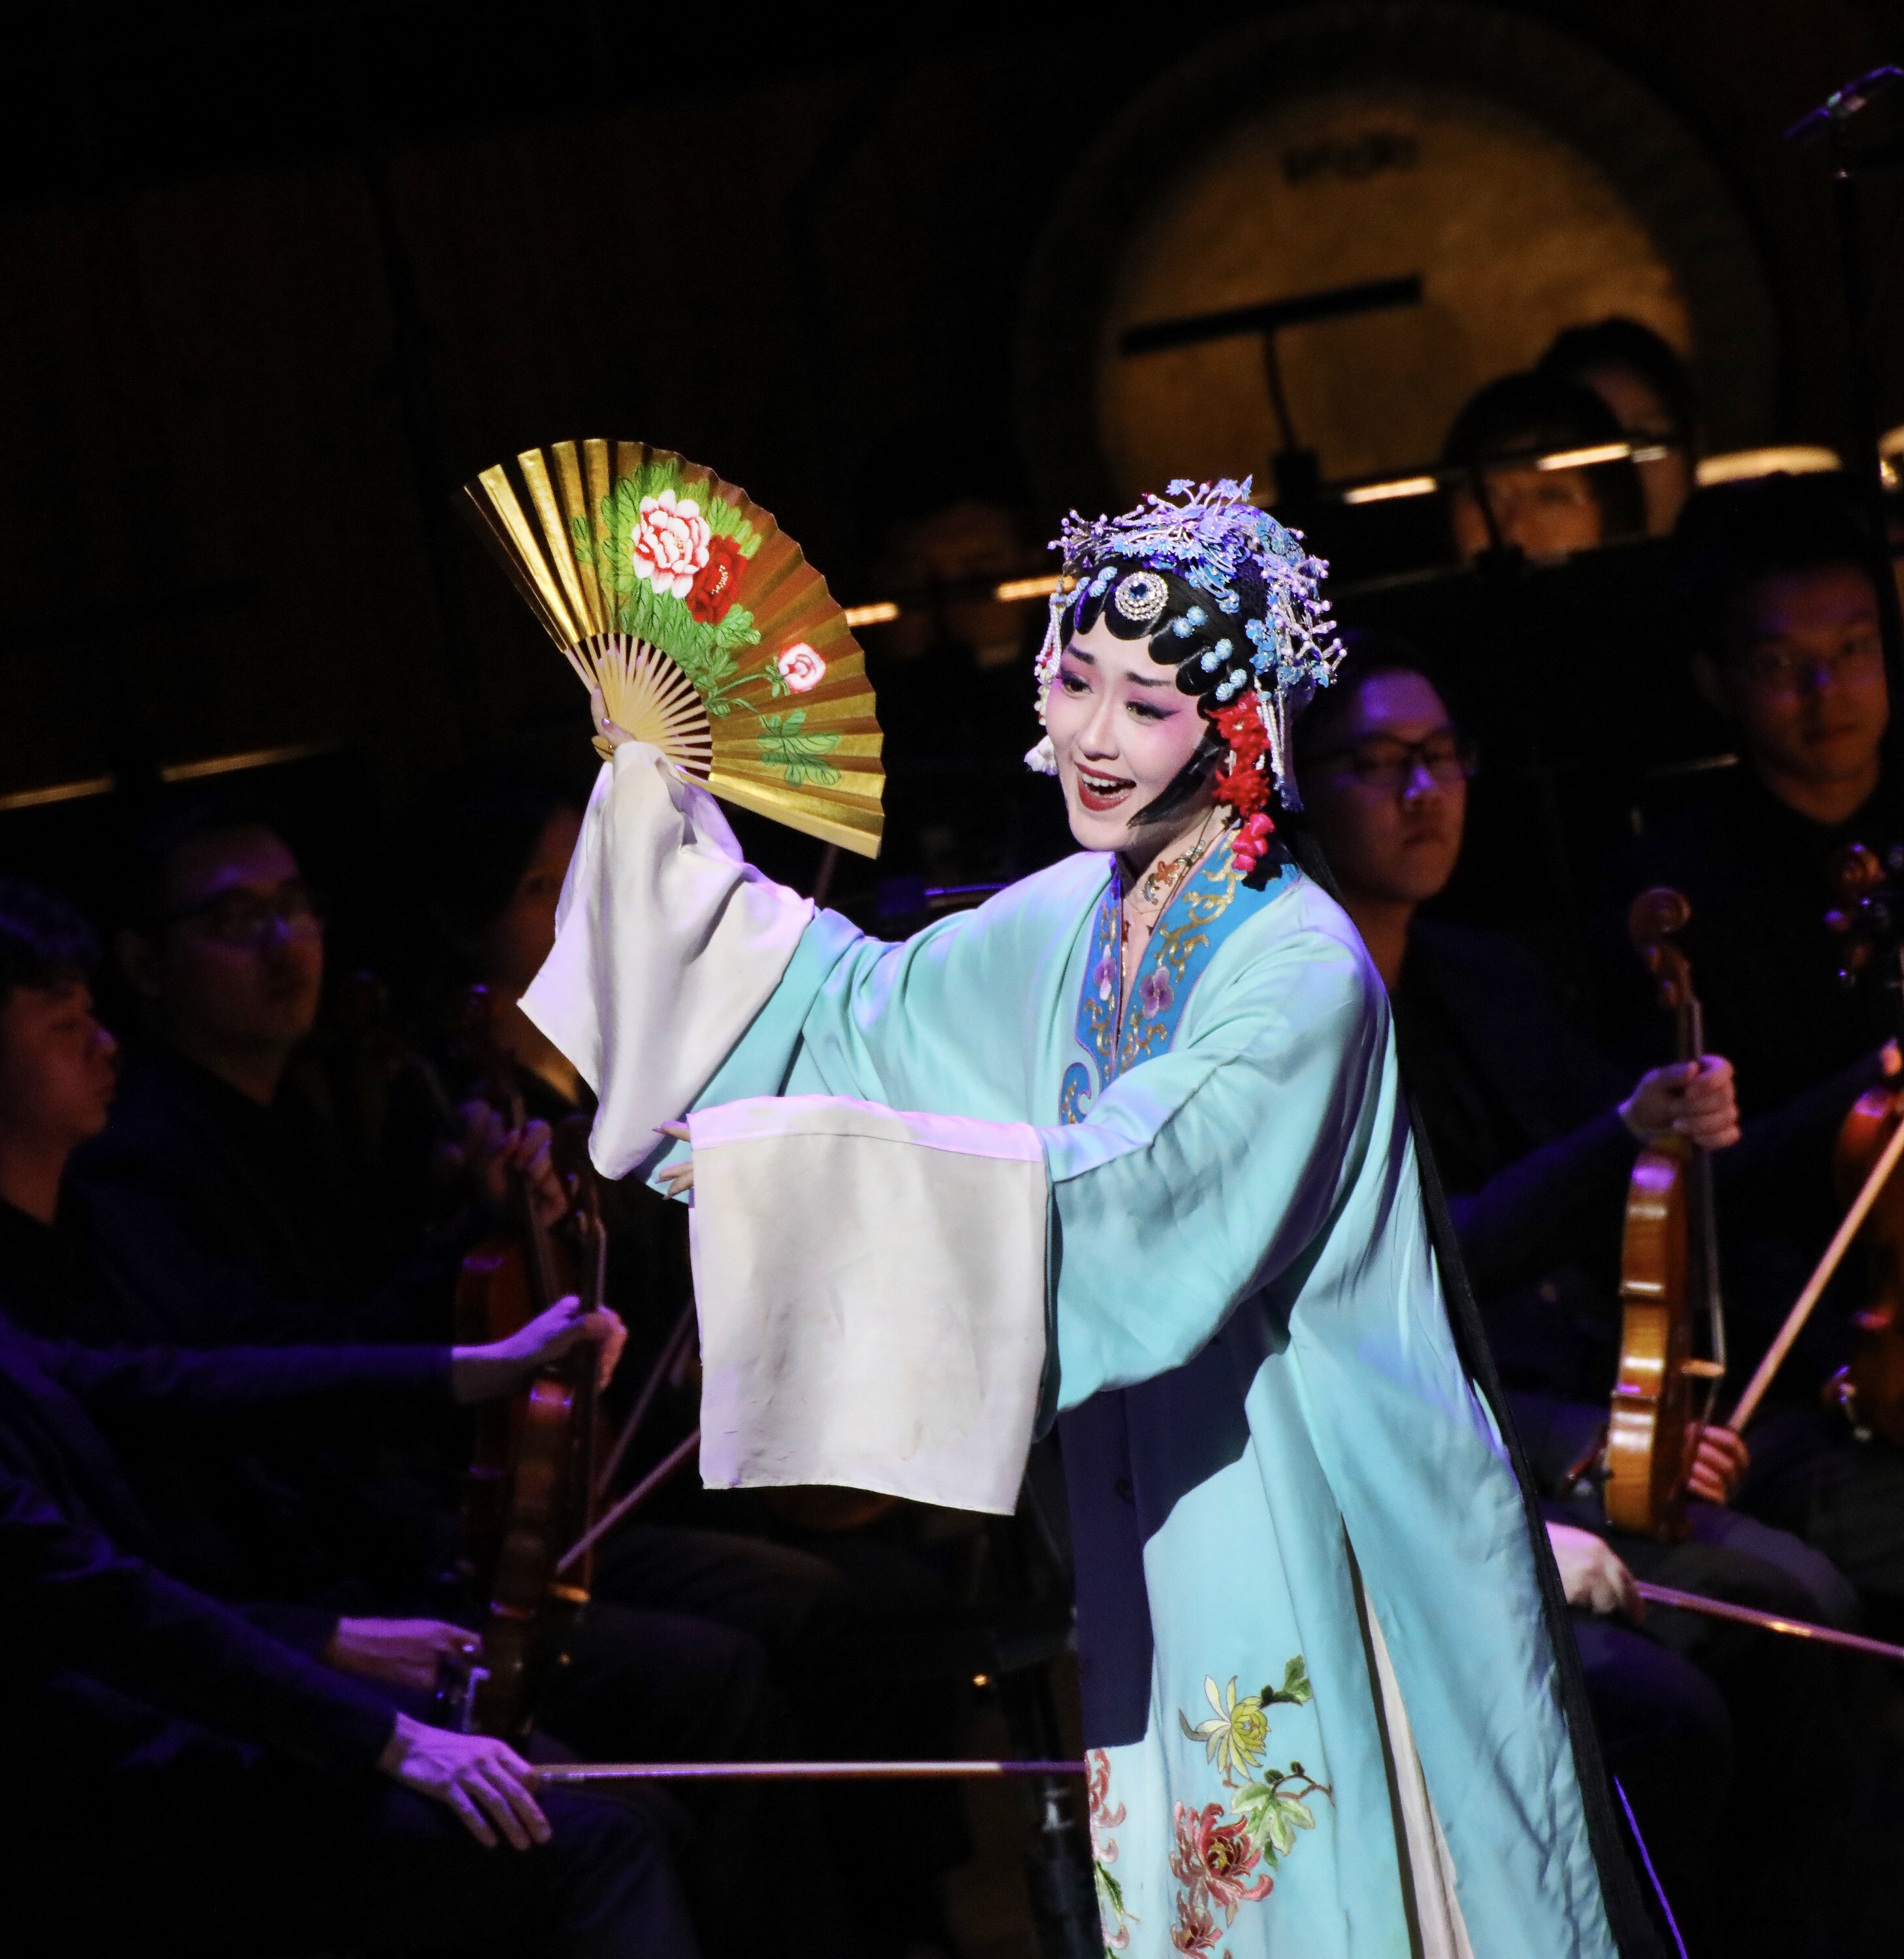 WeChat Image 20190408142852 中国戏剧泰斗同名歌剧《汤显祖》歌剧音乐会唱响悉尼歌剧院“东方莎士比亚” 走近西方观众